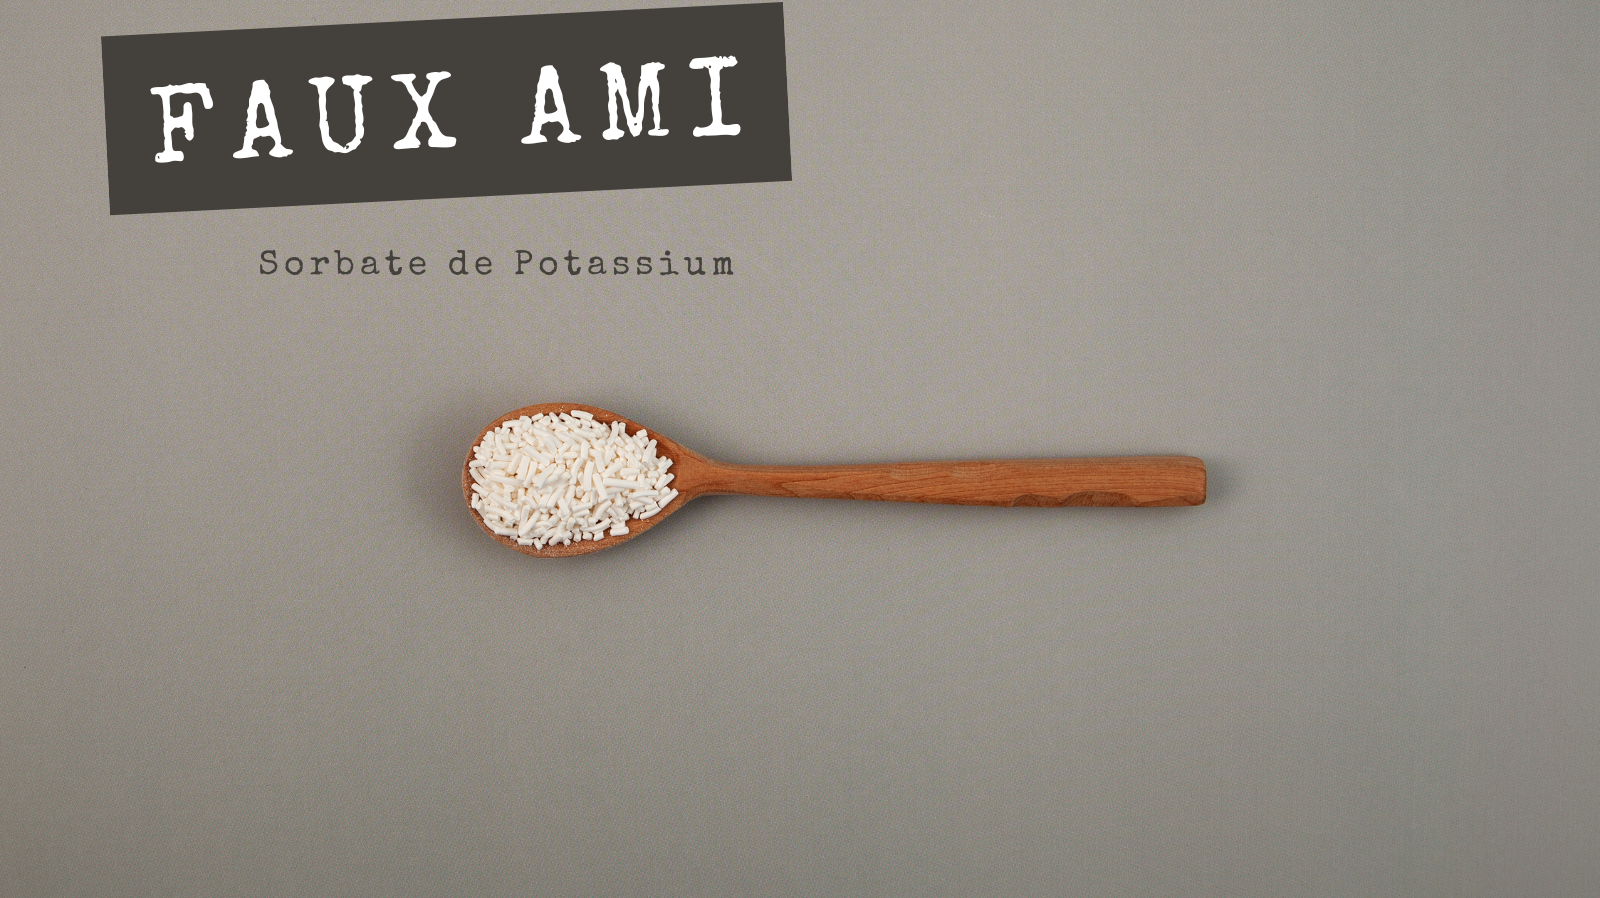 FAUX AMIS - Sorbate de Potassium